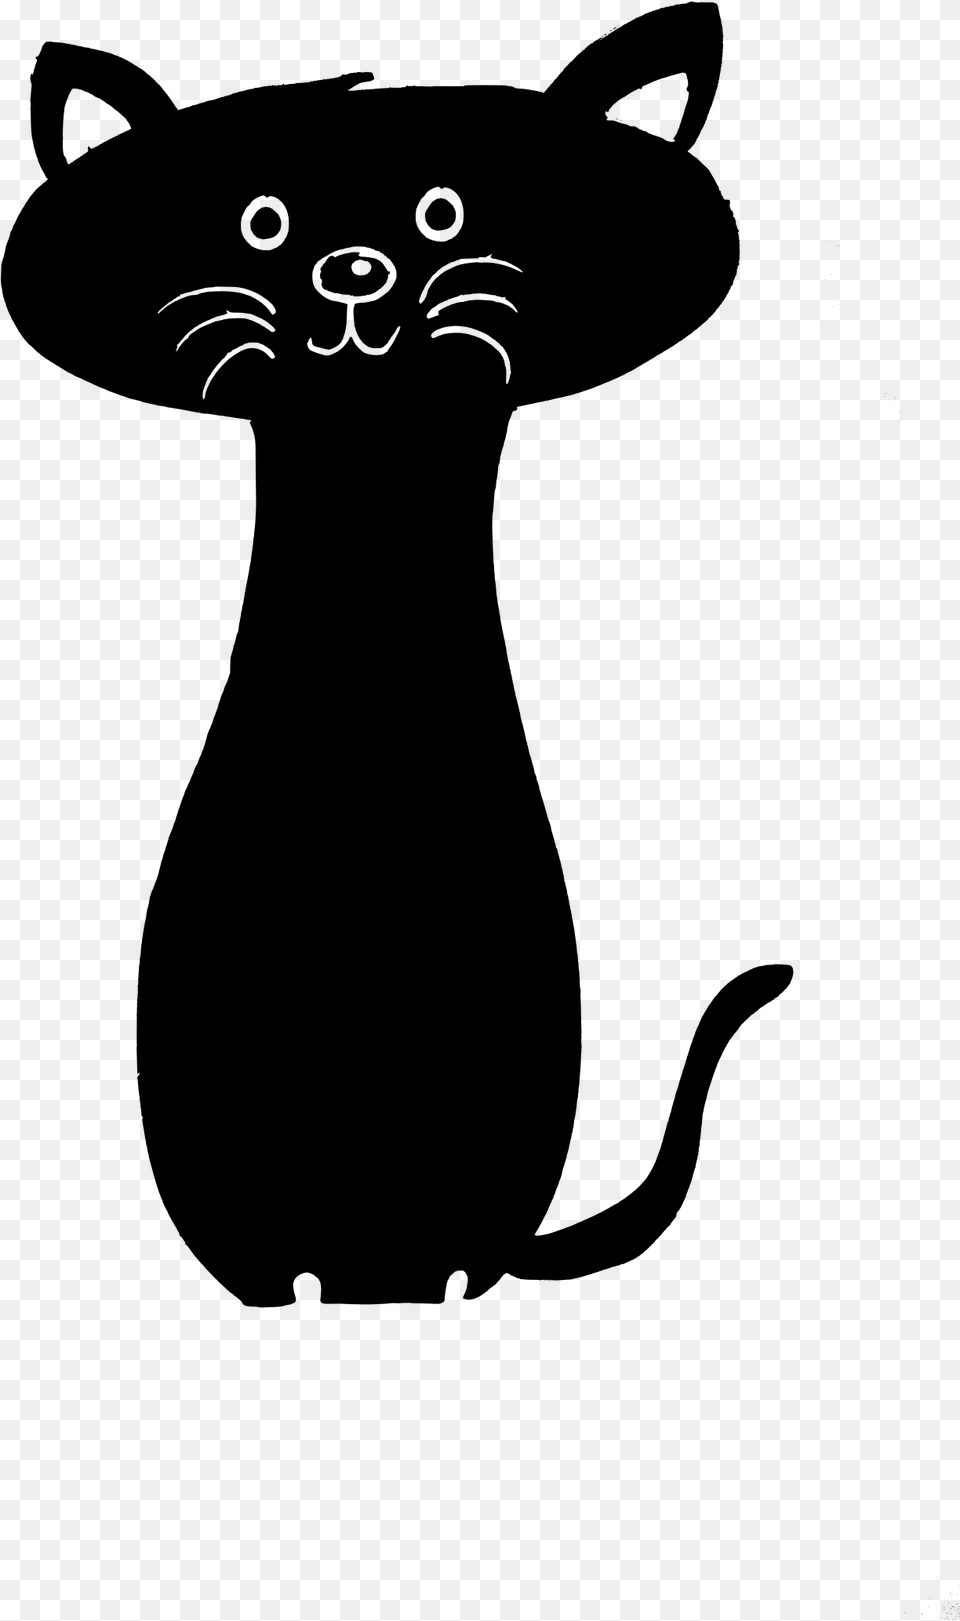 Black Cat Clipart Download Black Cat Transparent Cartoon, Gray Png Image